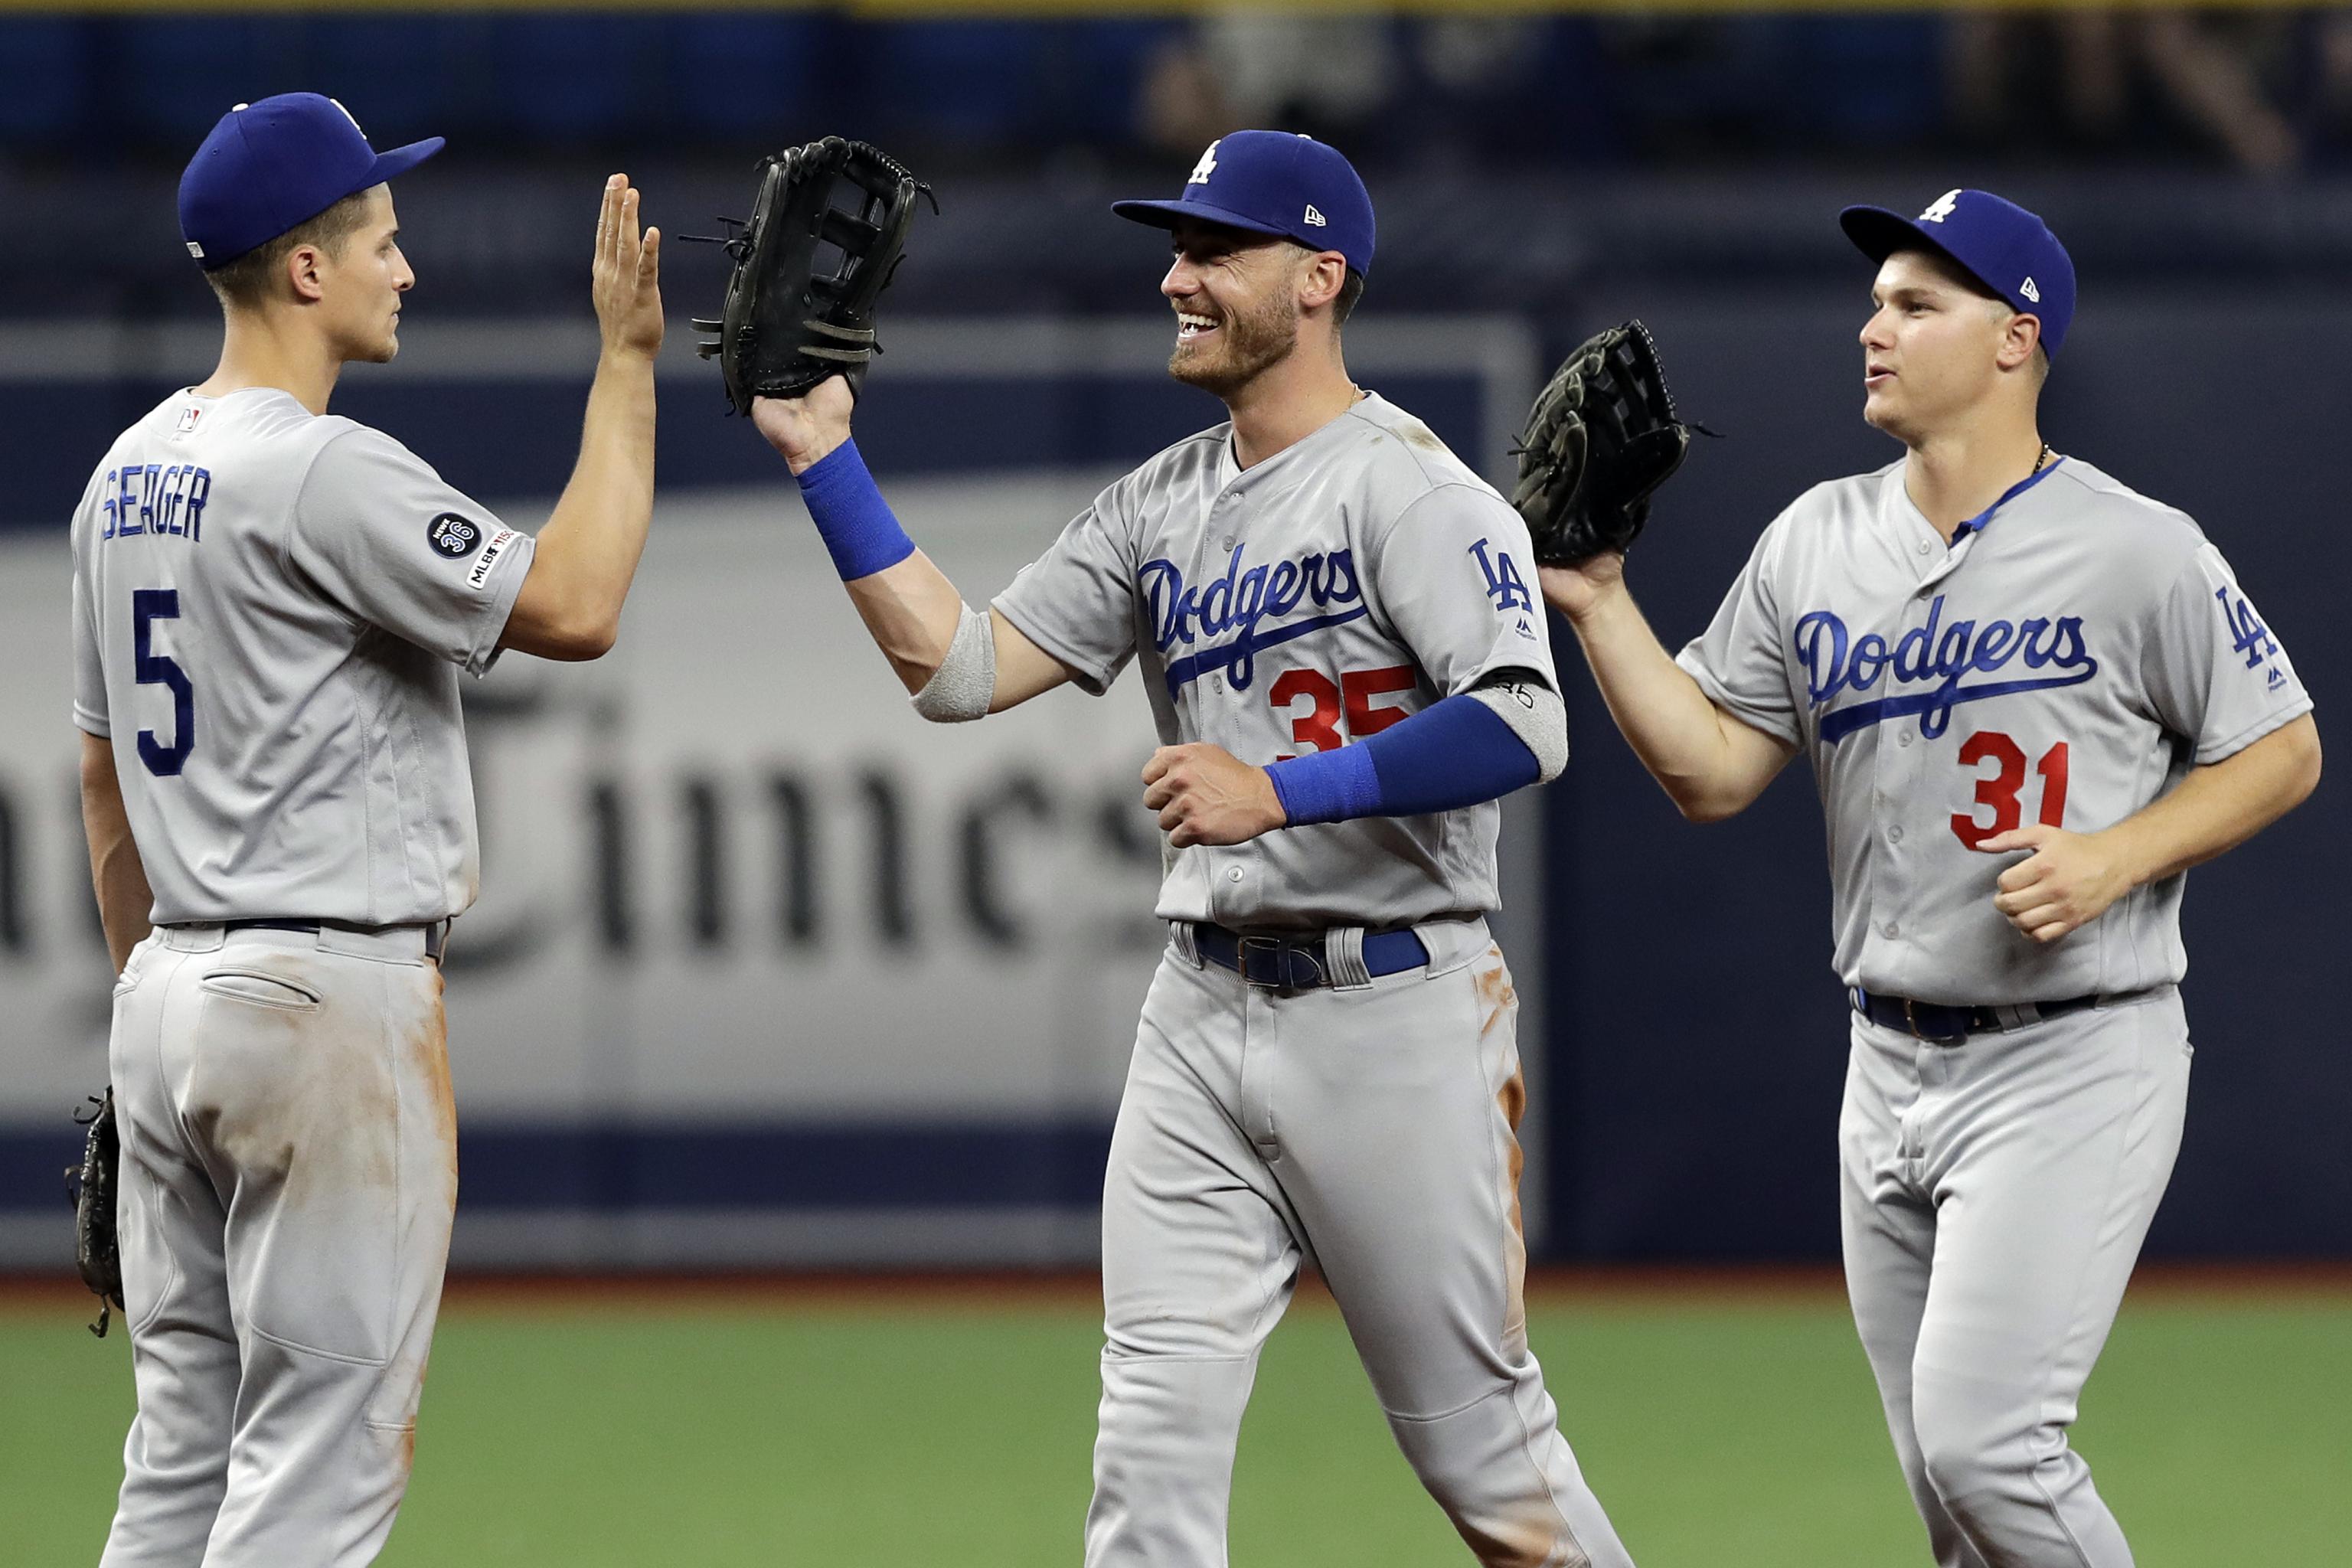 Cody Bellinger, Dodgers avoid arbitration